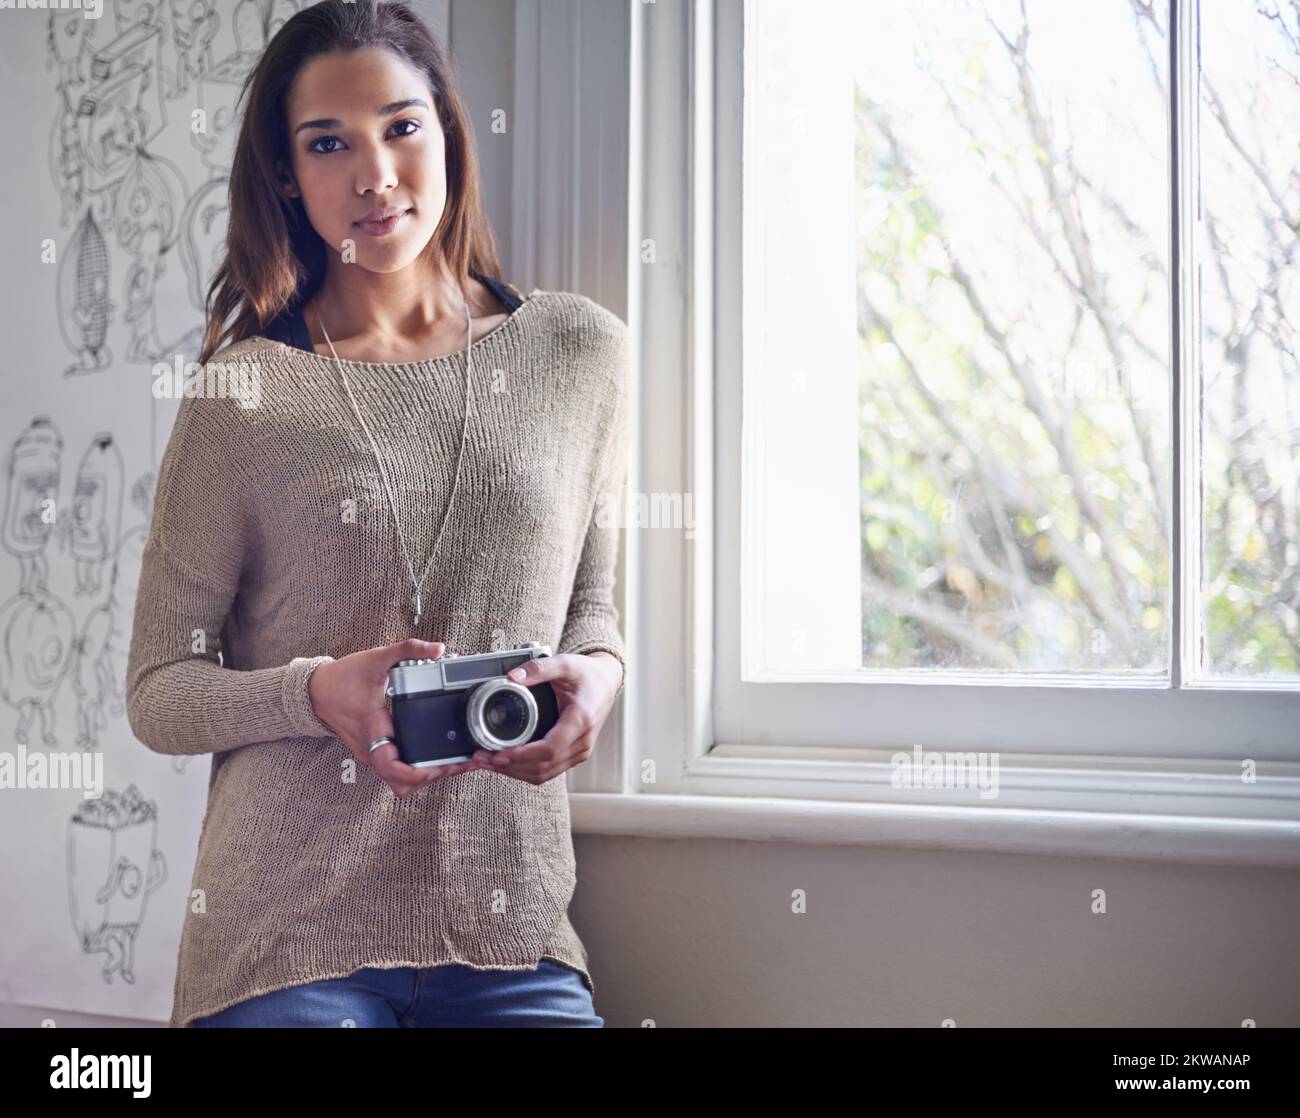 Sie liebt Fotografie. Eine junge Fotografin, die neben einem Fenster steht, während sie ihre Kamera hält. Stockfoto